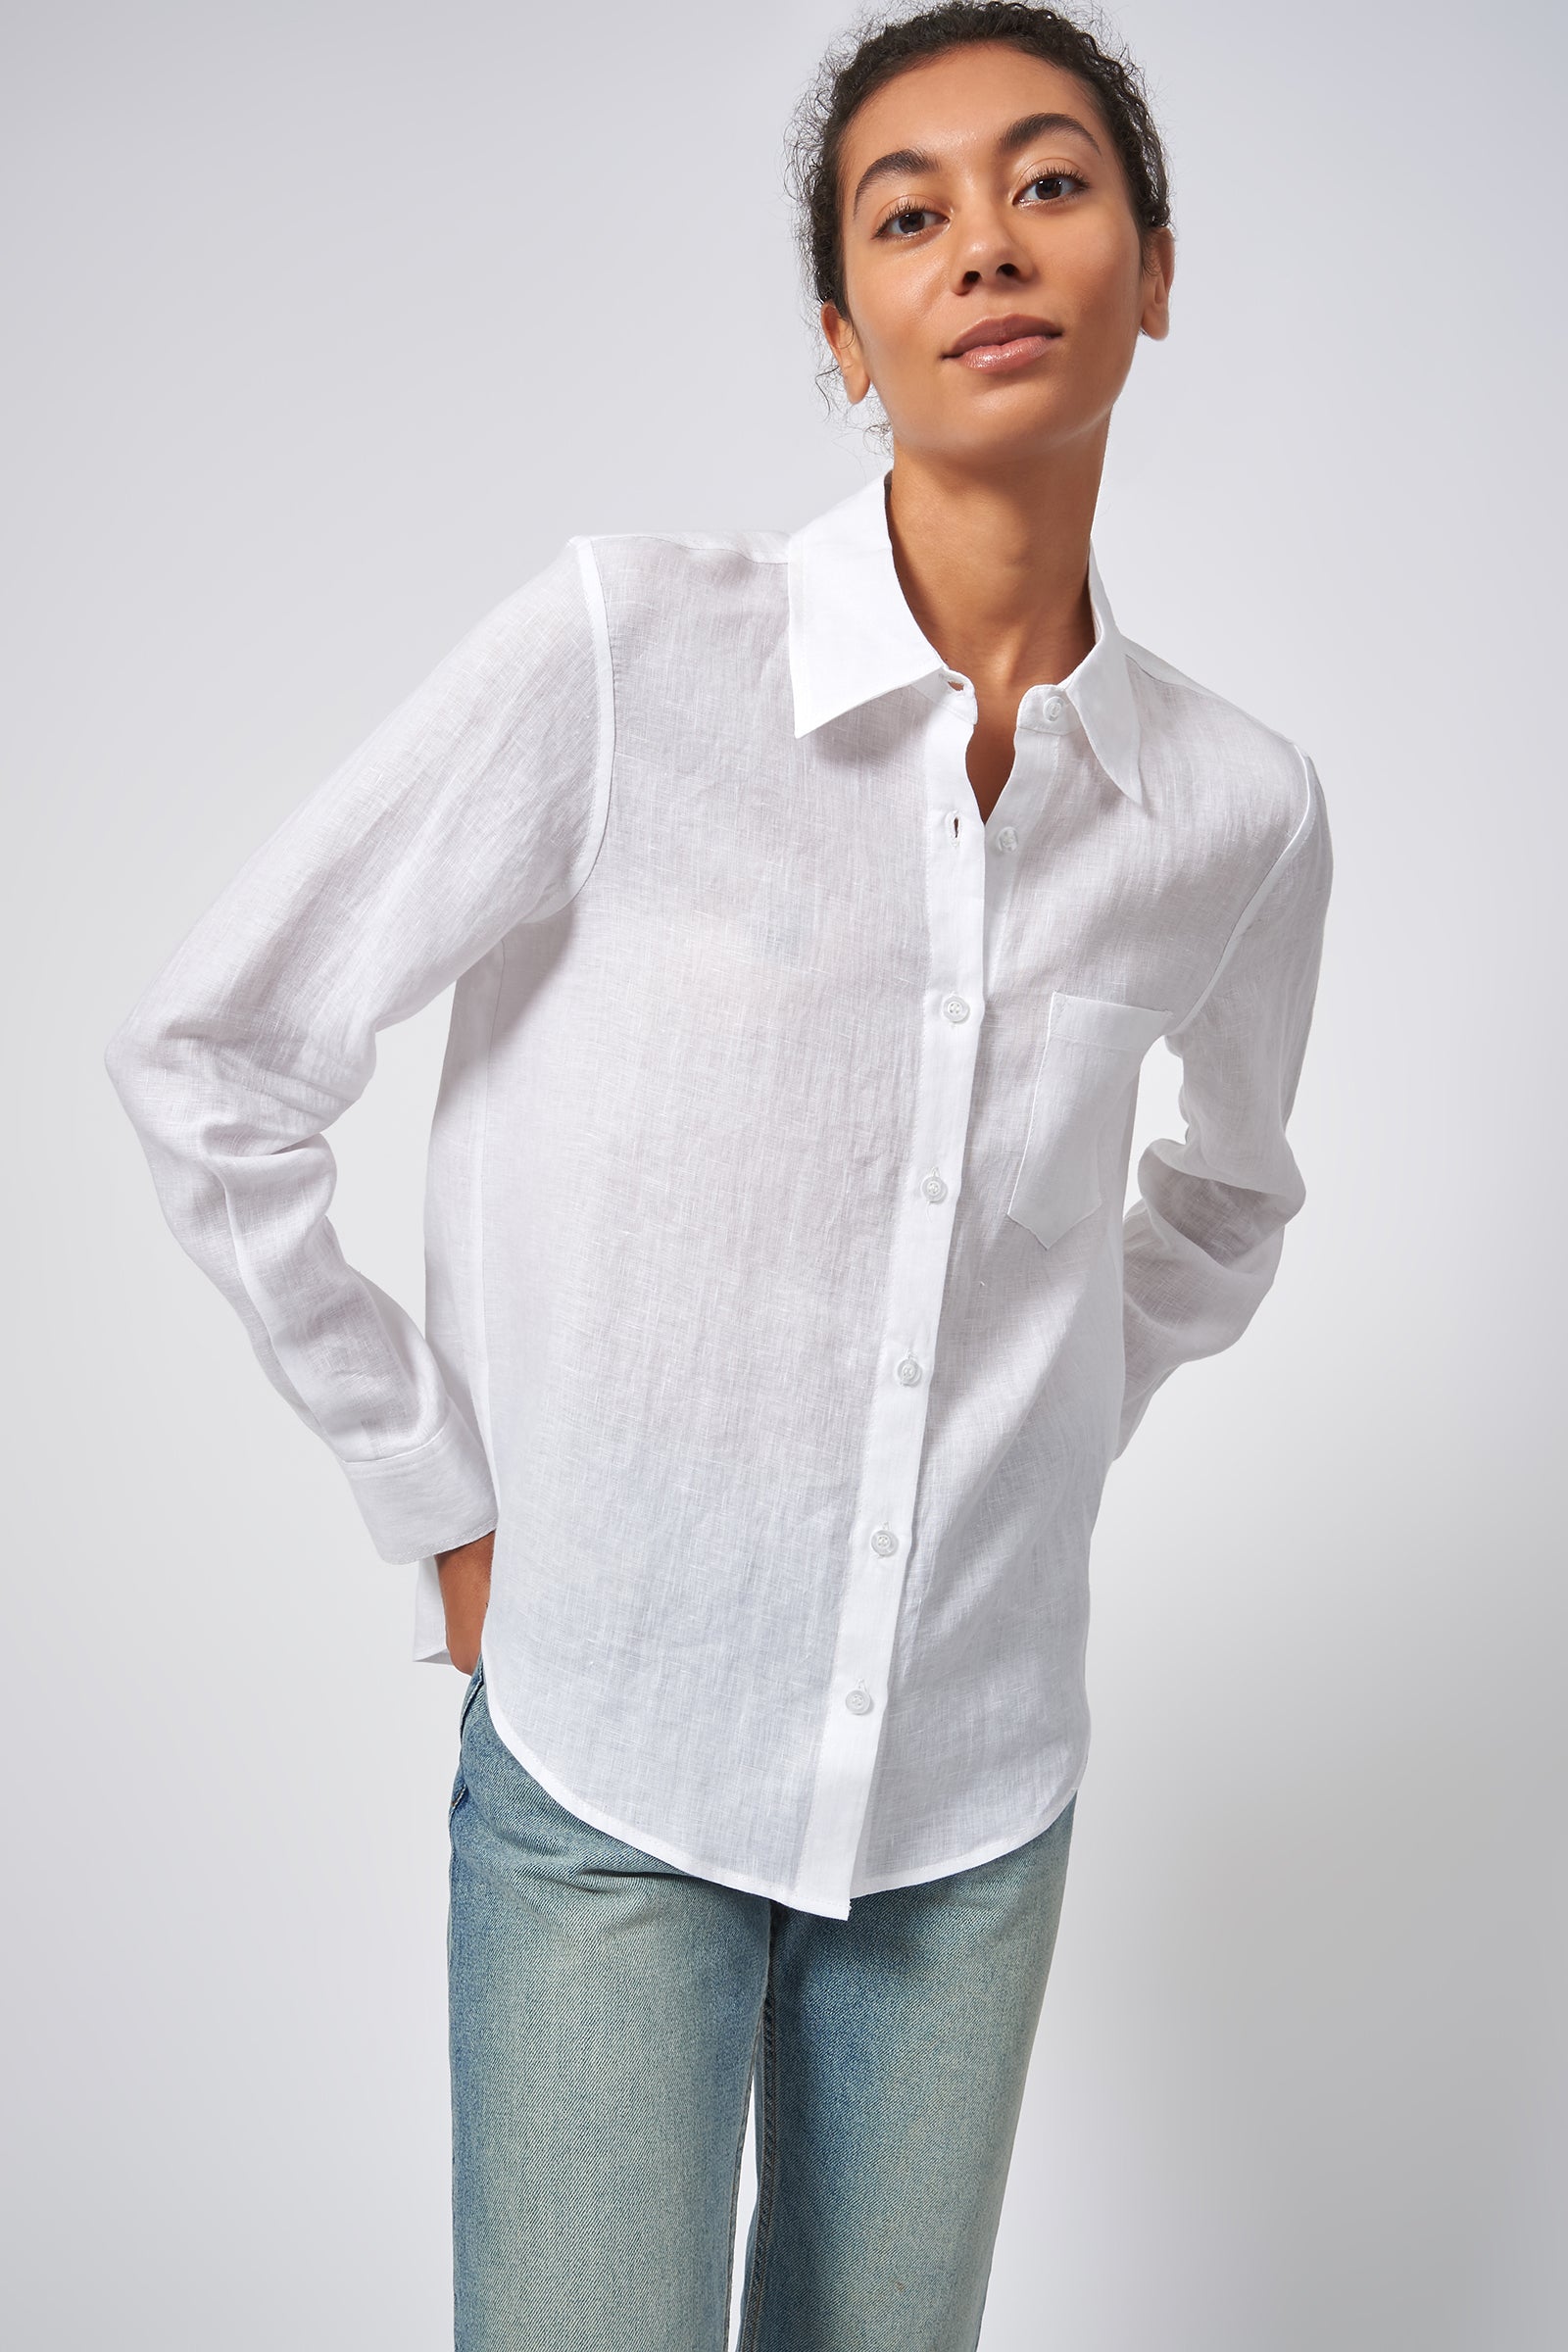 100% European Linen Long Sleeve Shirt